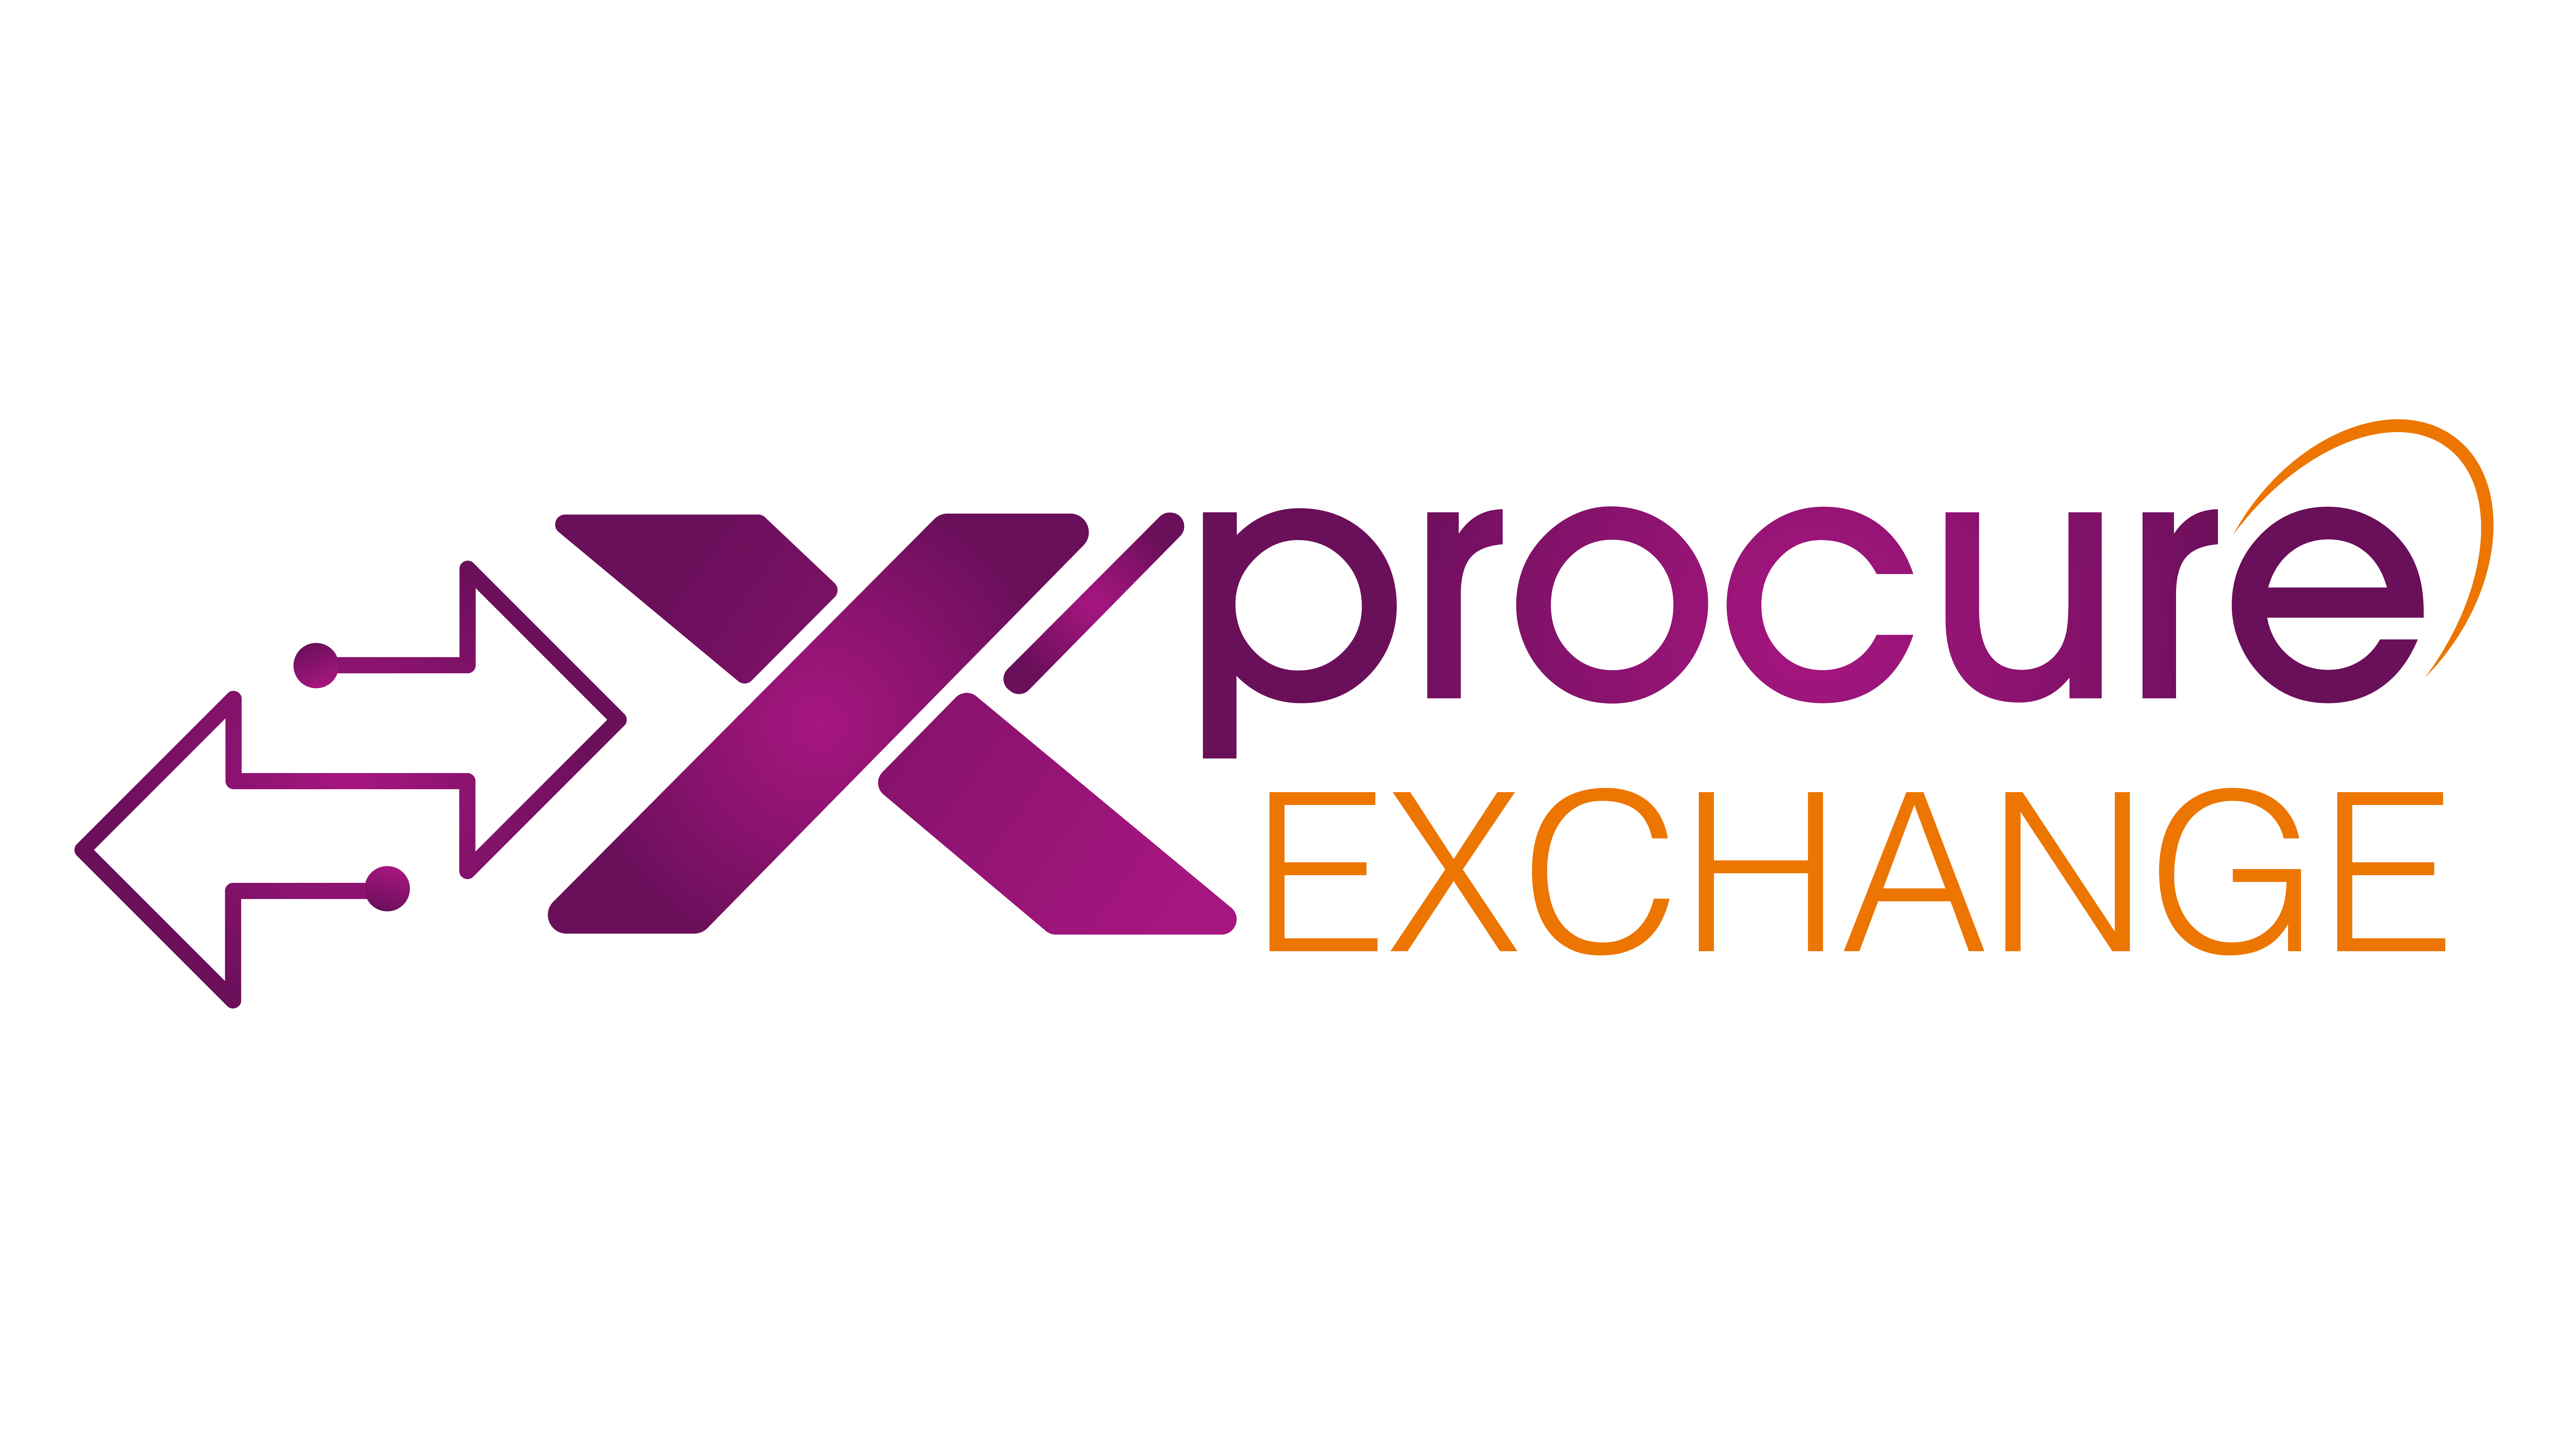 XP Exchange logos-01